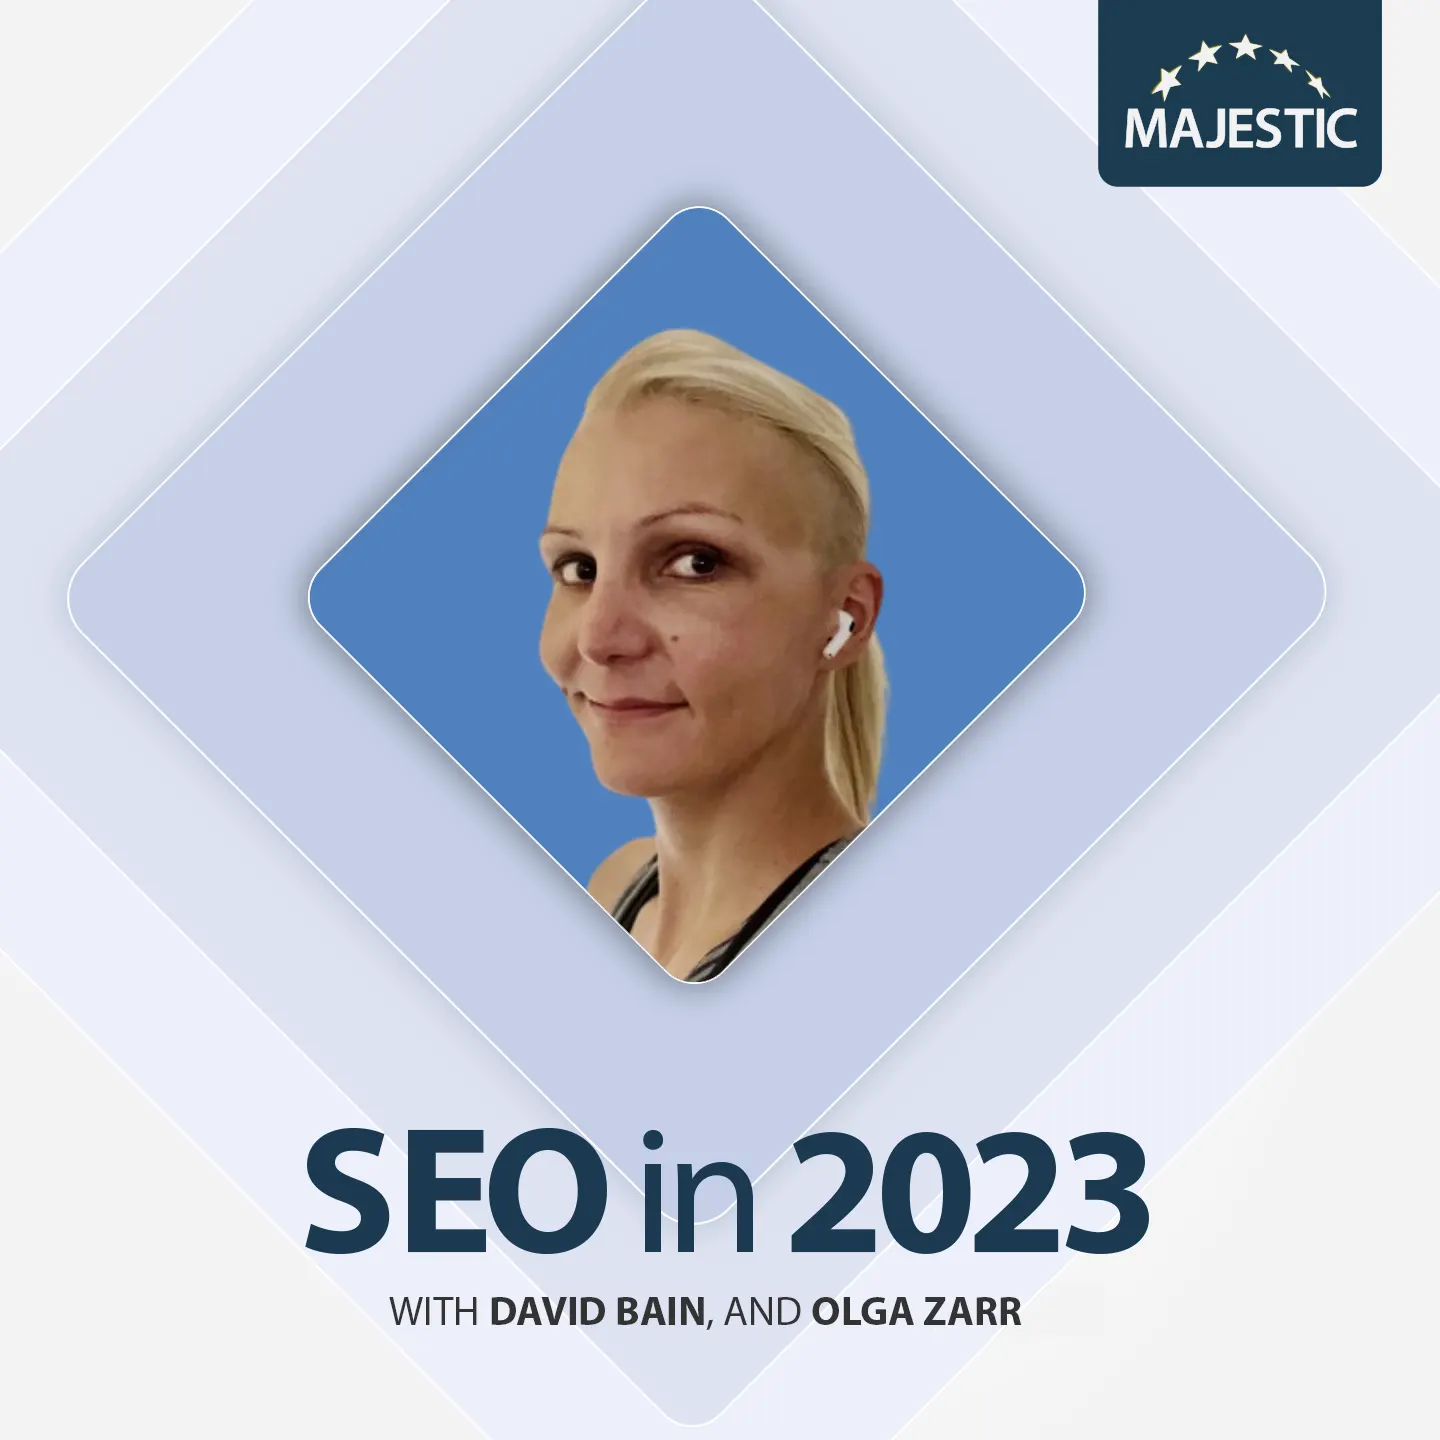 Olga Zarr 2023 podcast cover with logo